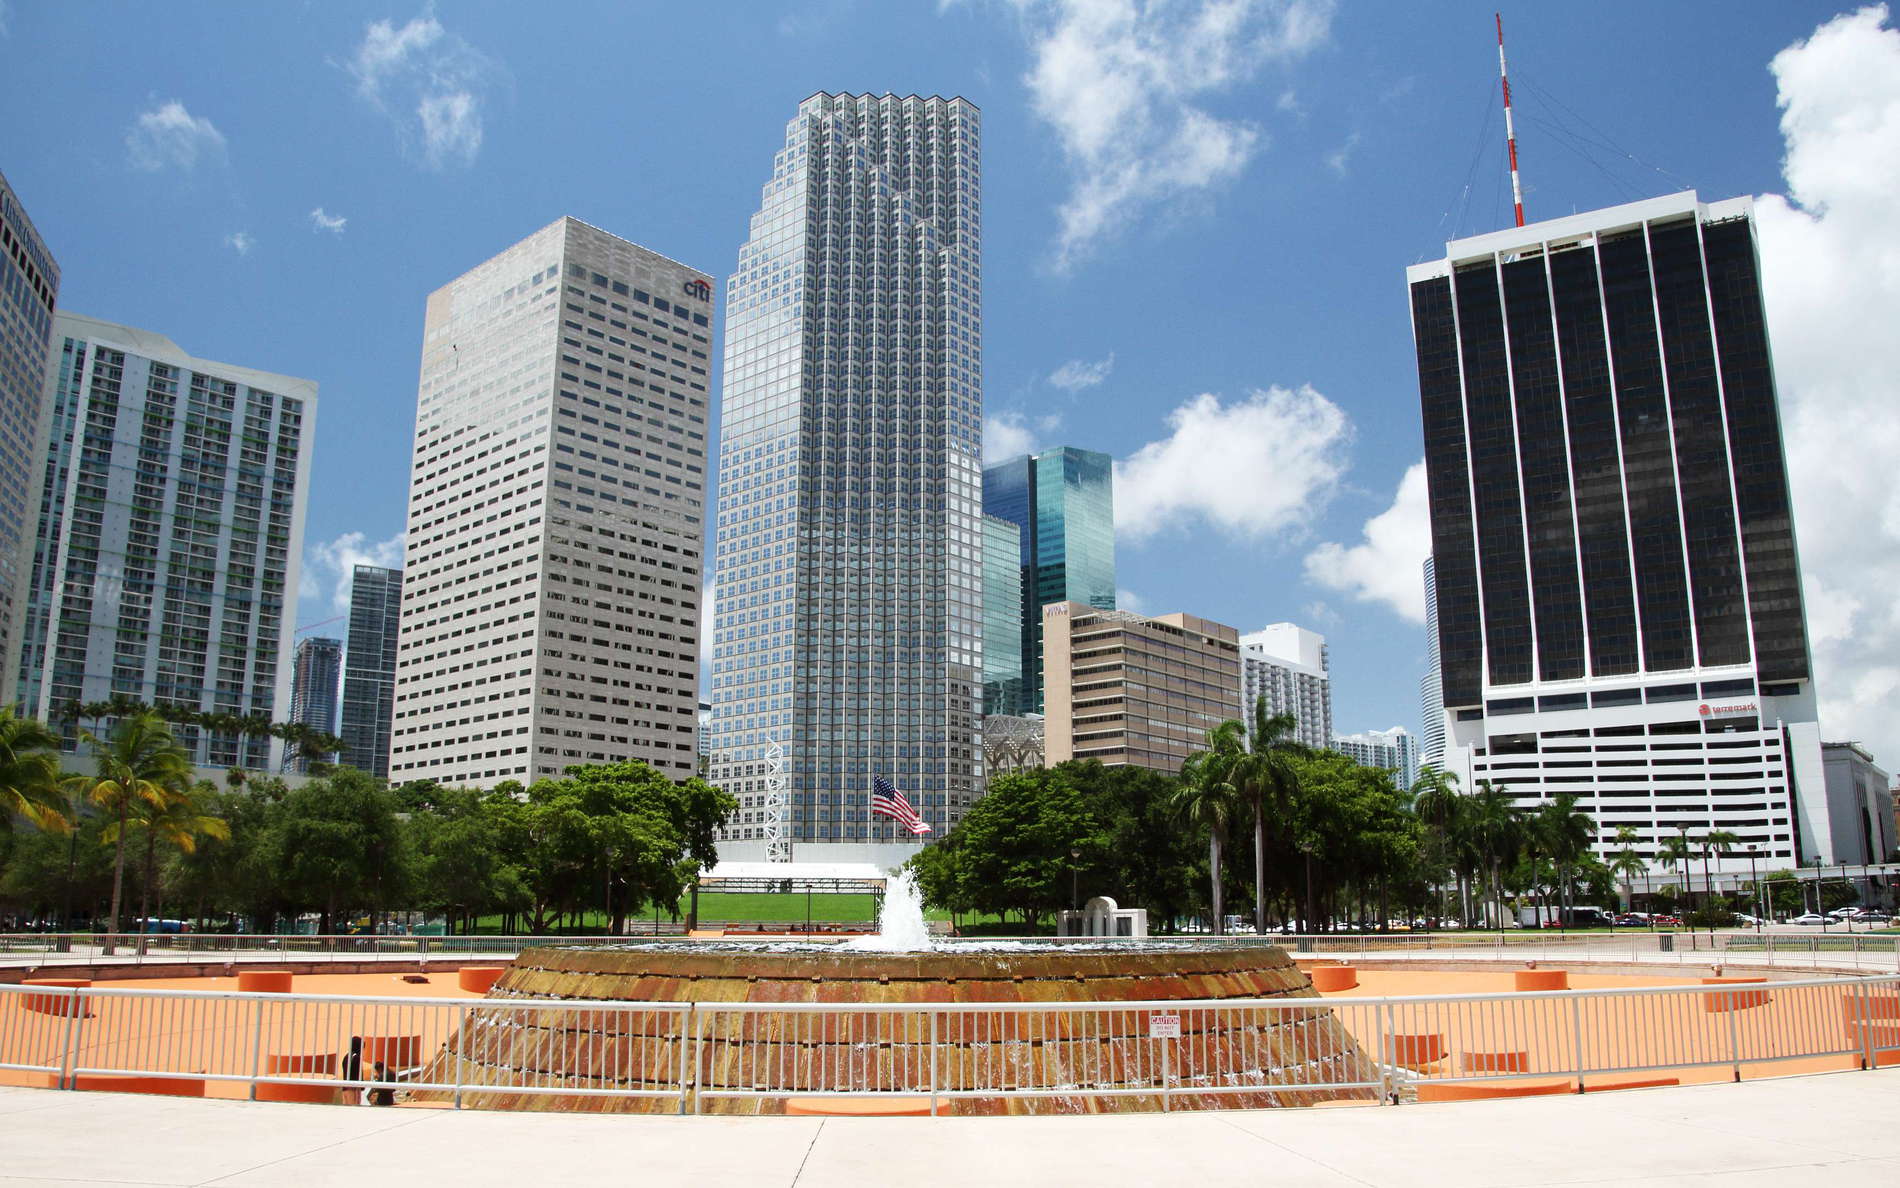 Miami | Pepper Fountain and CBD